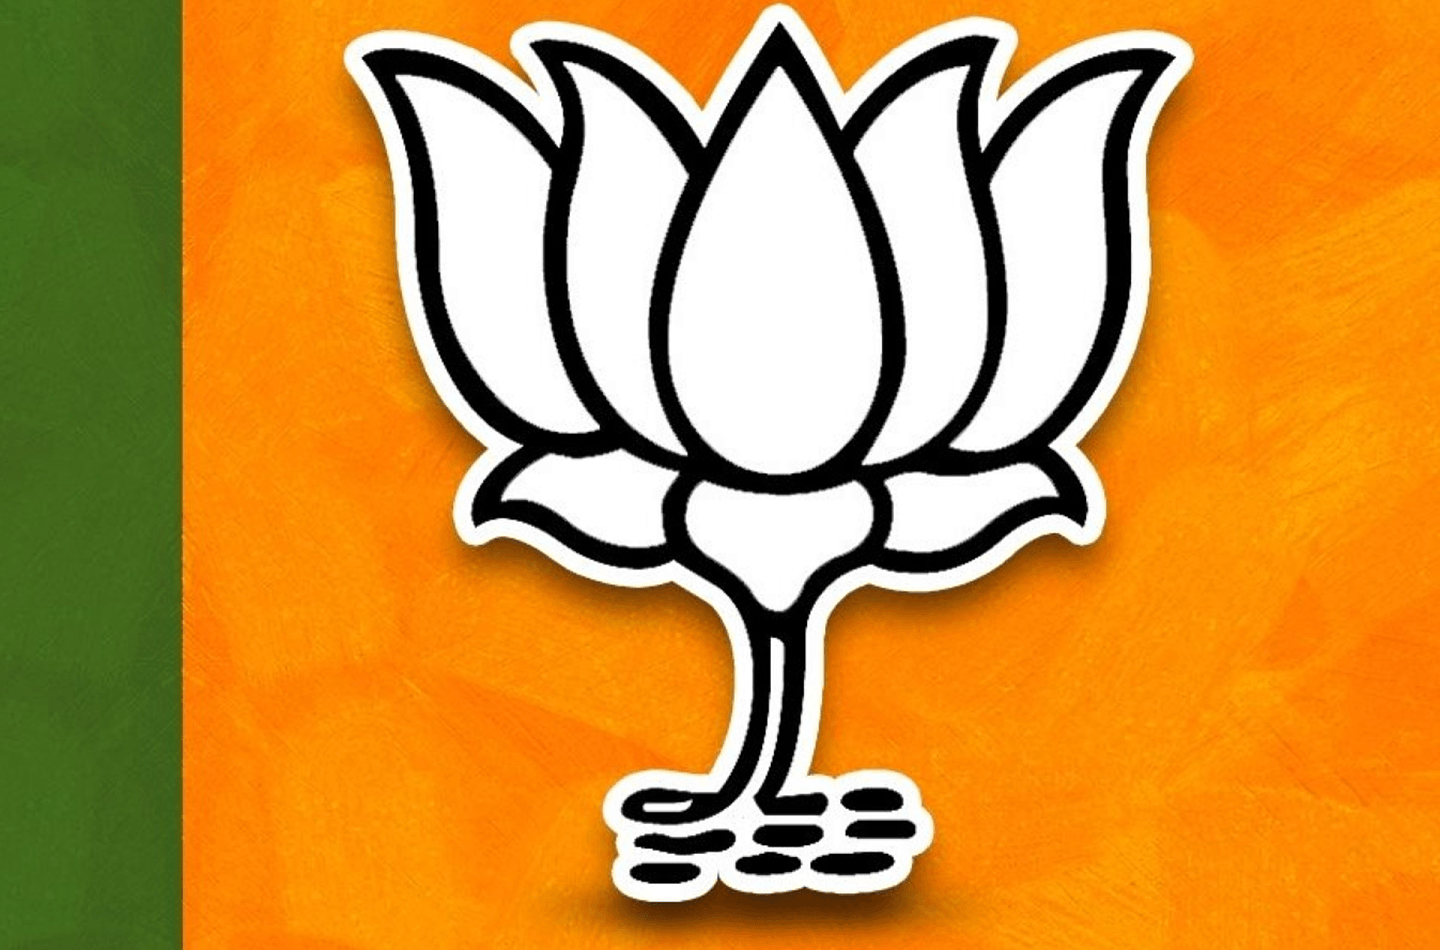 印度人民党是印度议会和邦议会中代表权最大的政党，其党徽是一朵莲花。（Facebook@Bharatiya Janata Party (BJP)）